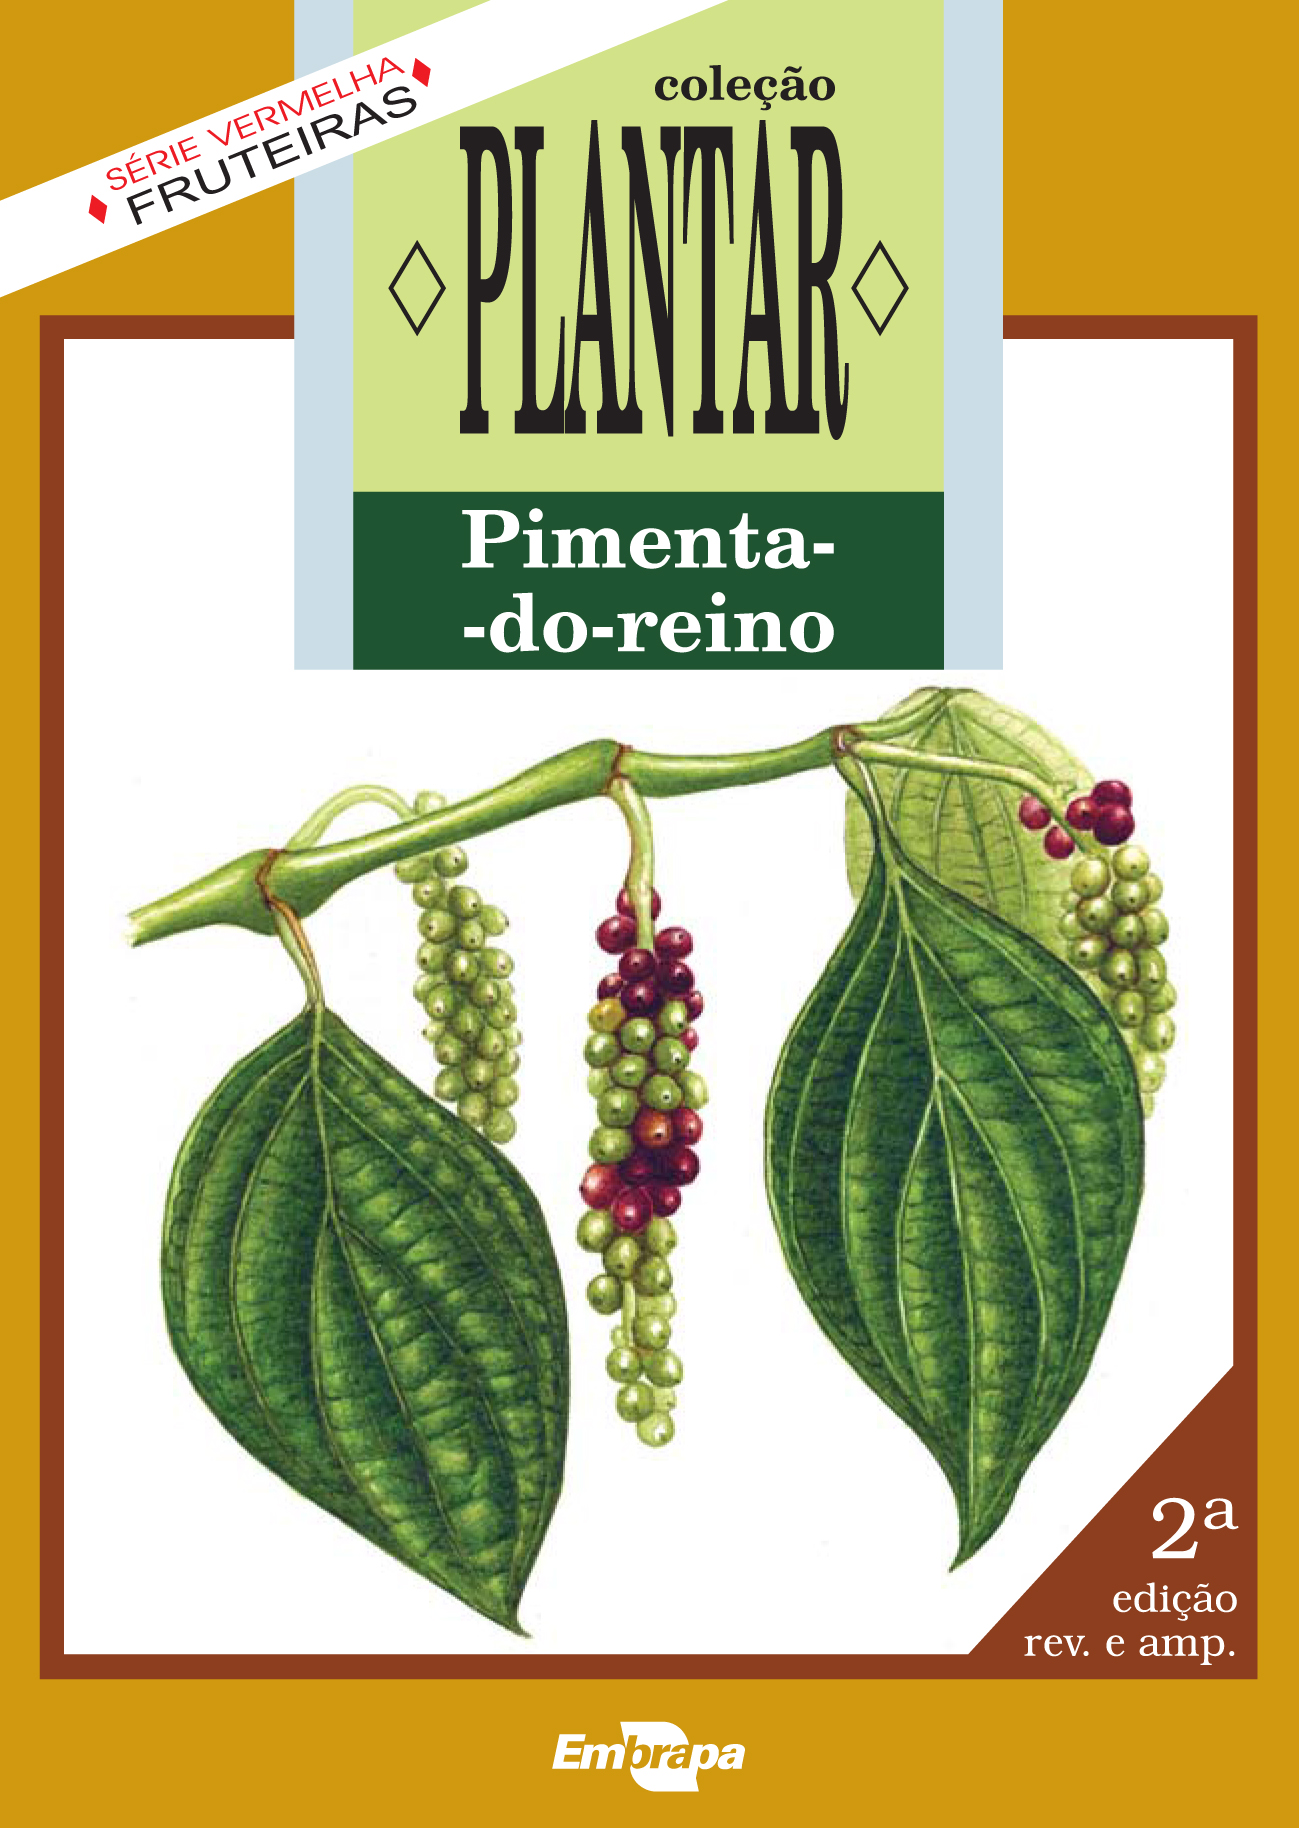 Capa de livro da coleção Plantar